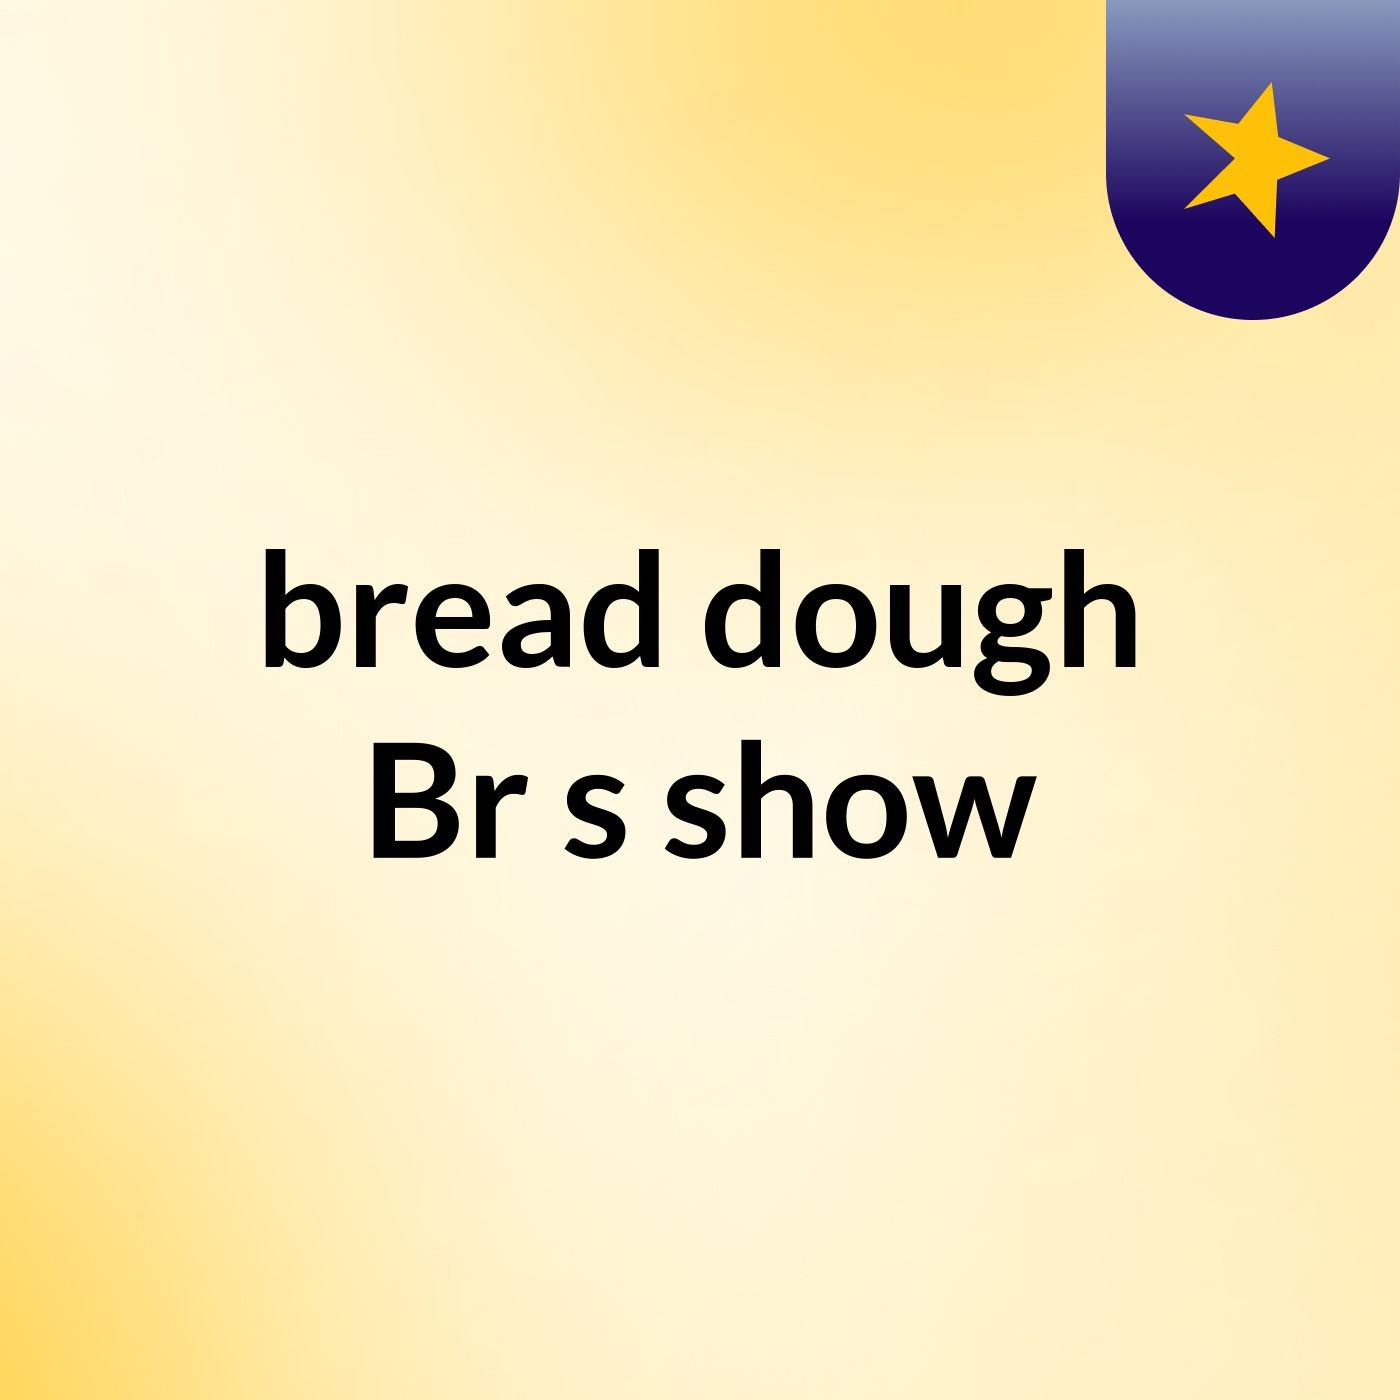 bread dough Br's show